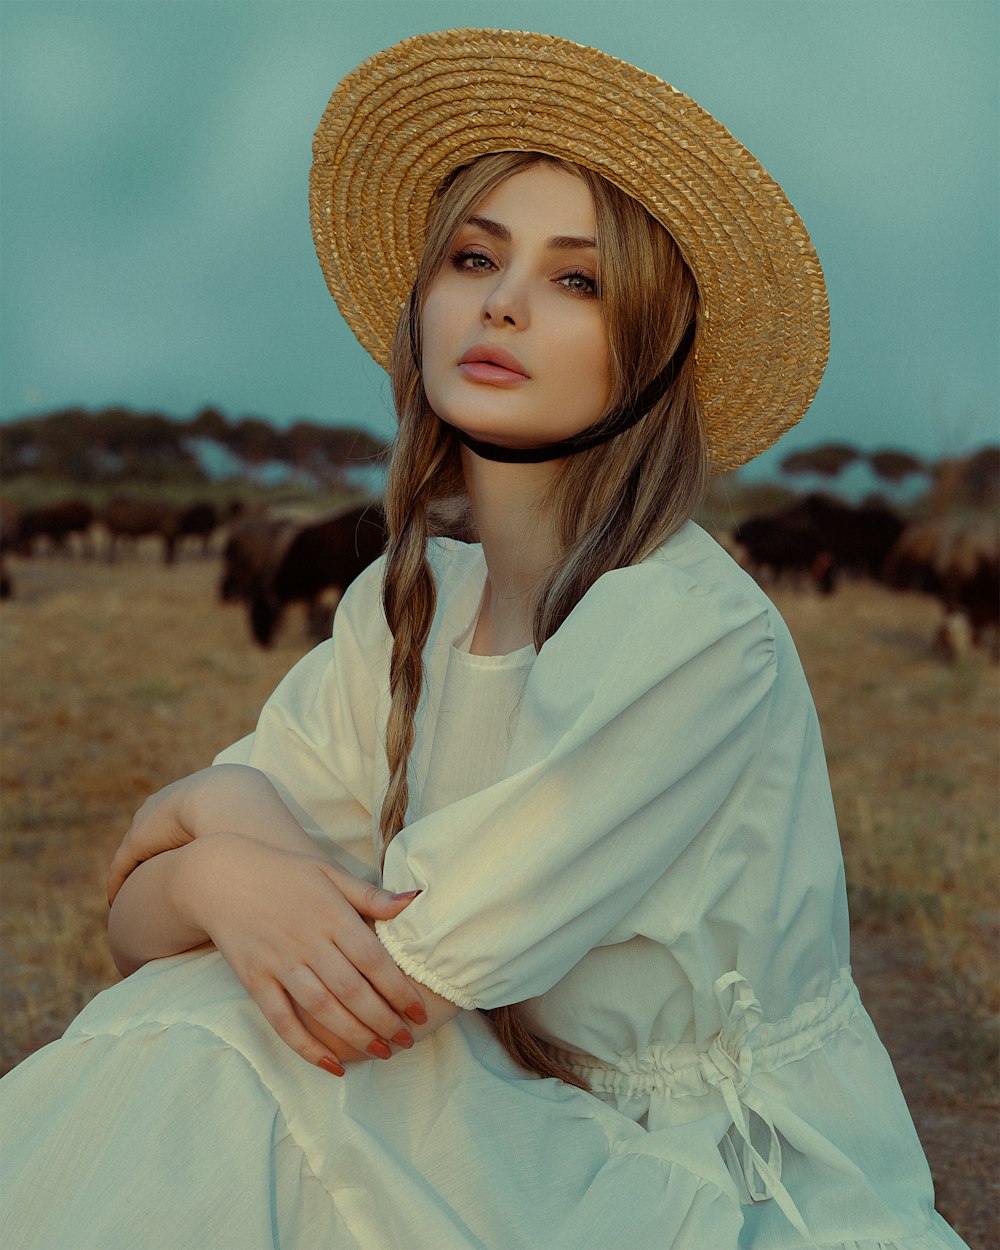 Une femme coiffée d’un chapeau de paille assise dans un champ